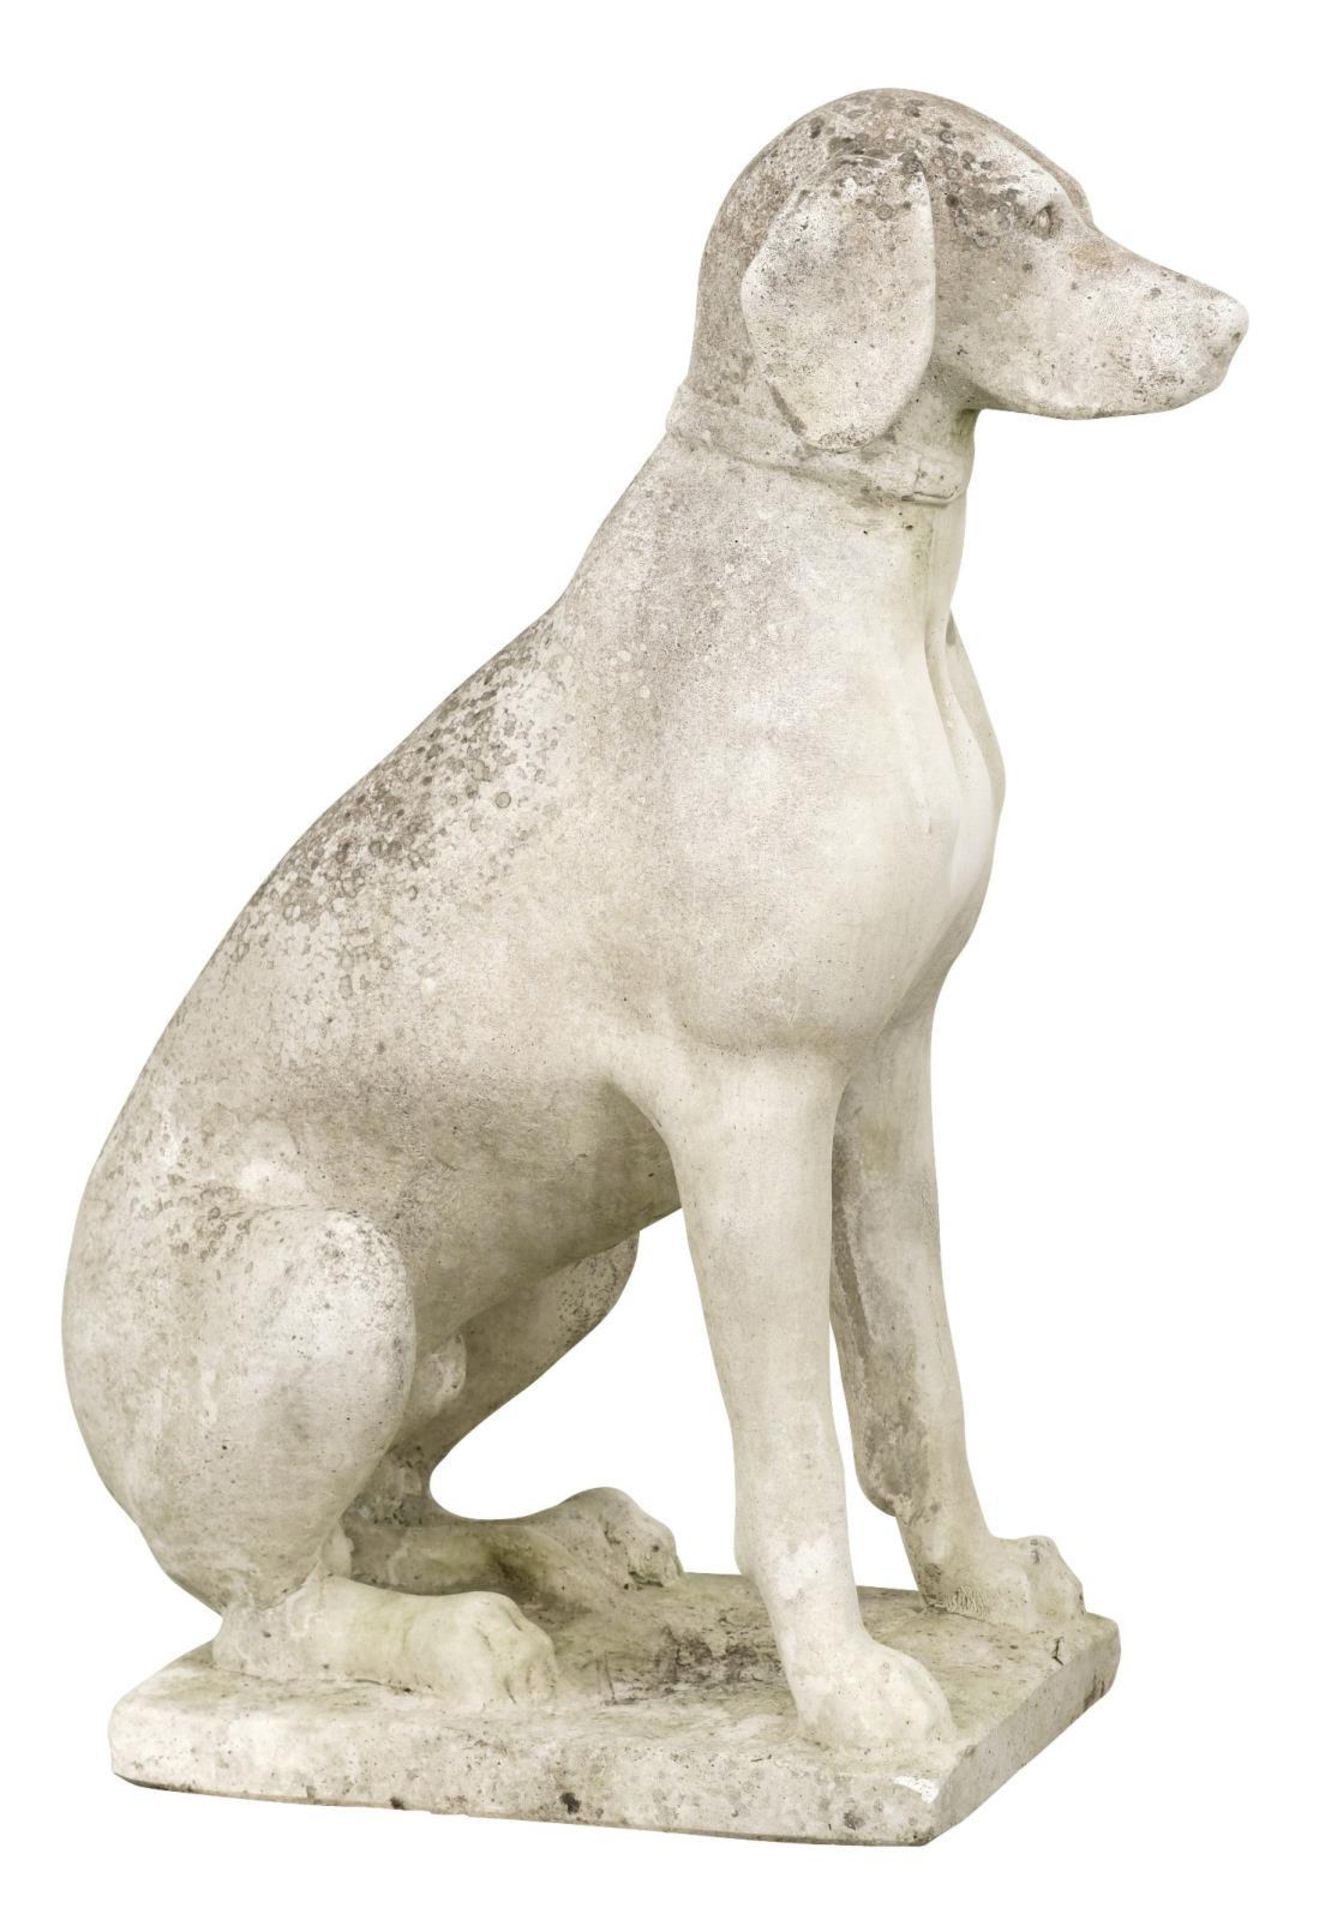 Gartenfigur: Sitzender Hund. Steinguss. - Image 2 of 2